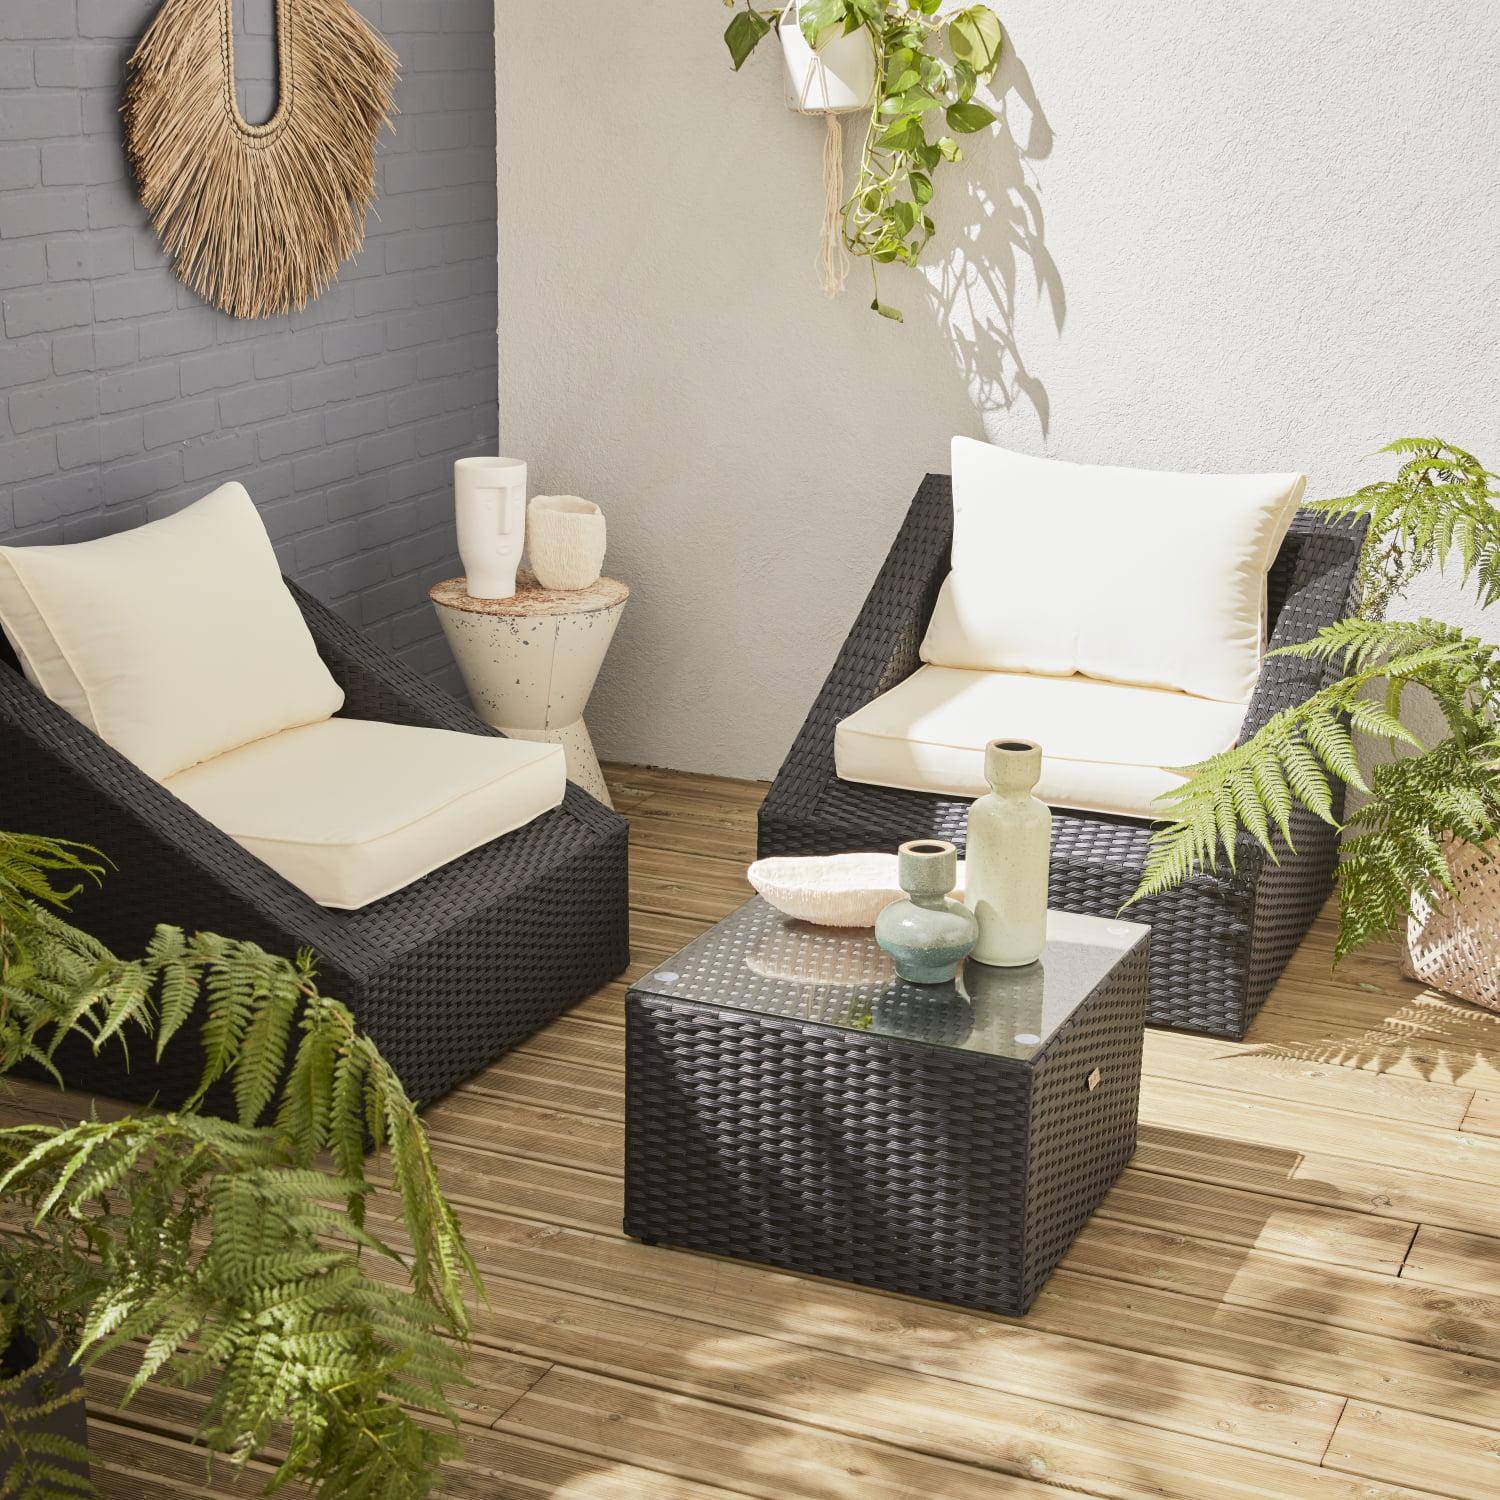 Sitzgarnitur für den Garten 2 Sitze - Triangolo - schwarzes Kunststoffrattan, ecrufarbene Kissen, Stühle + 1 Couchtisch, stapelbar Photo1